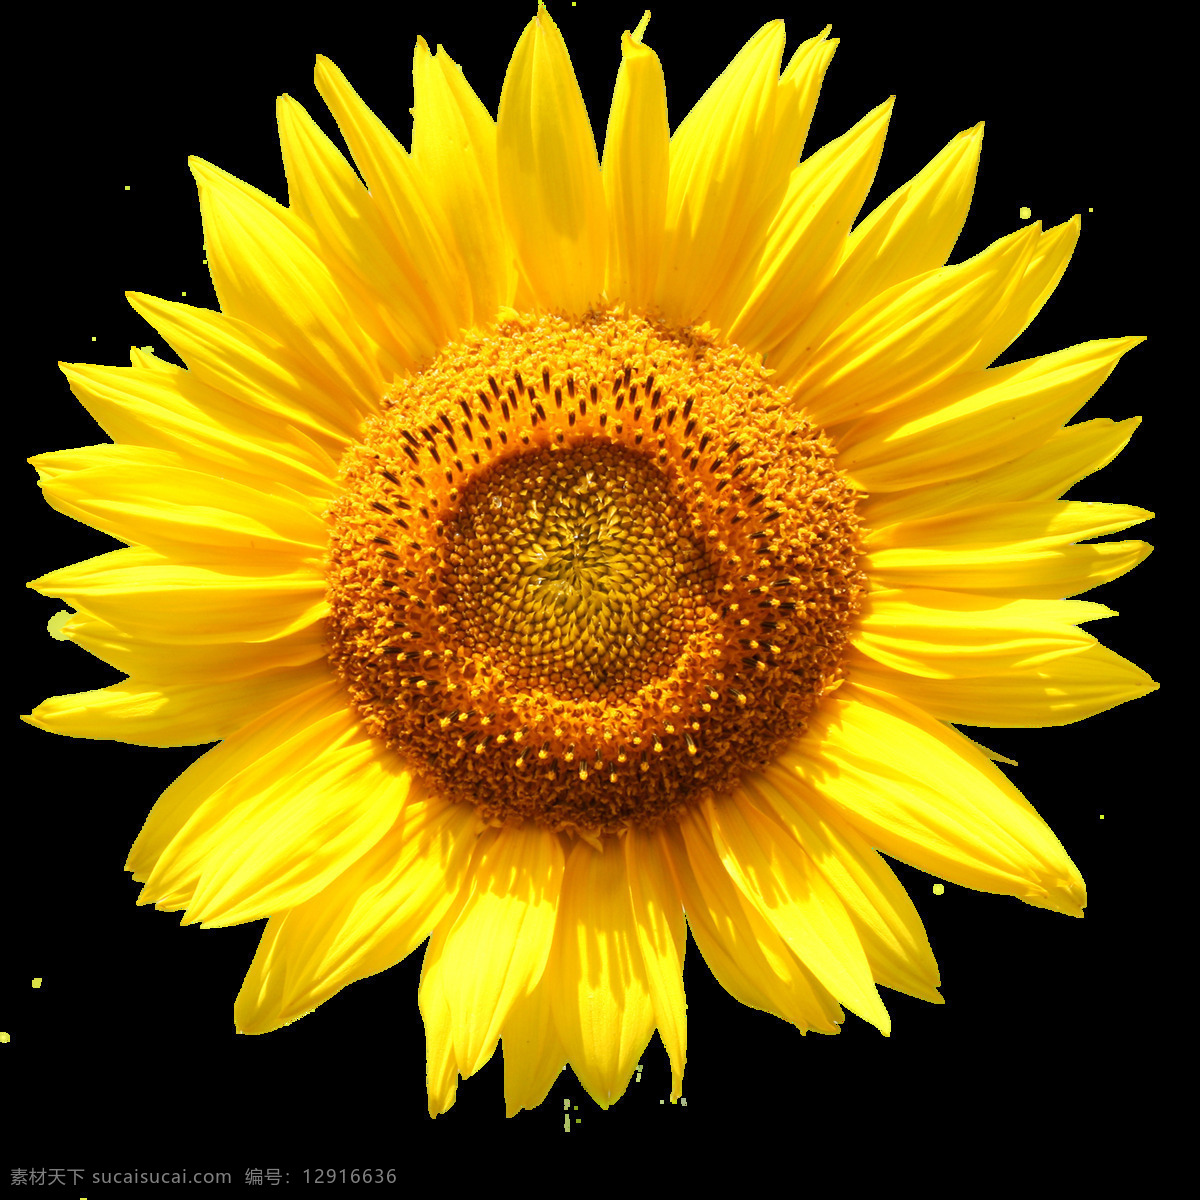 黄色 太阳花 向日葵 鲜花 免 扣 花朵 花朵元素 花束 花藤 黄色向日葵 角花 精美花朵 情人节 元素 手绘花 手捧花 鲜花元素 装饰